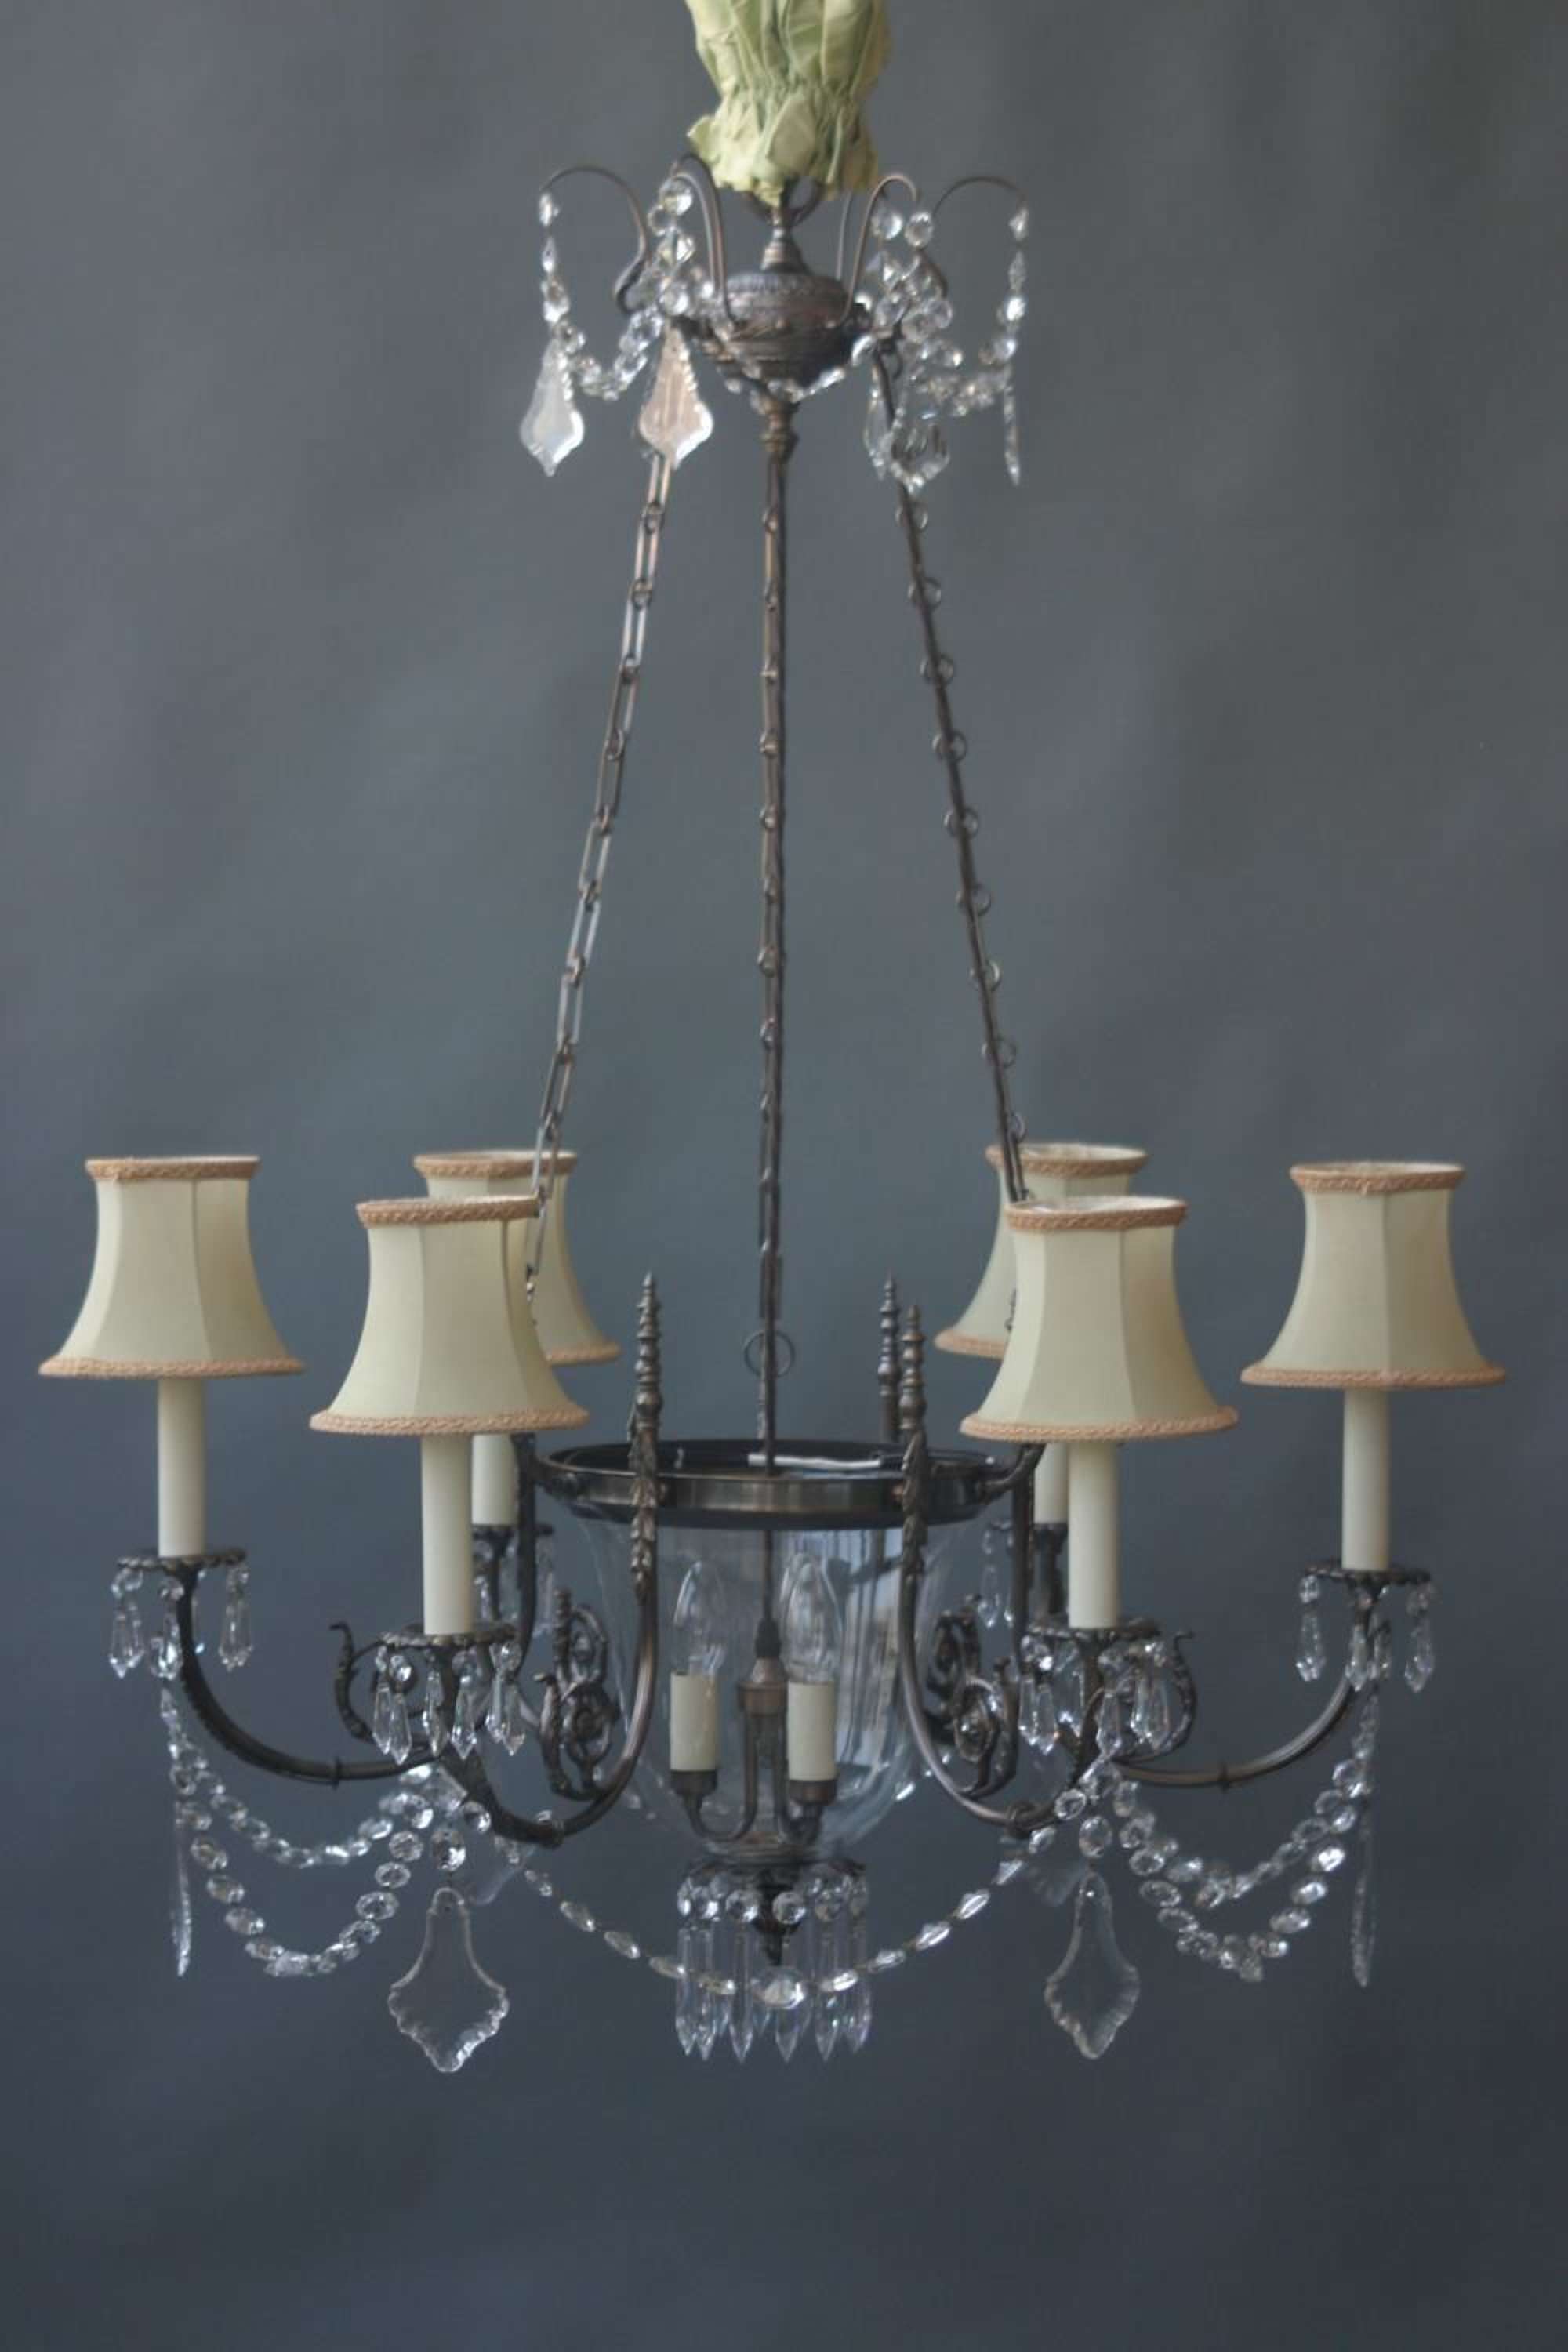 Russian style, 6+3 light chandelier